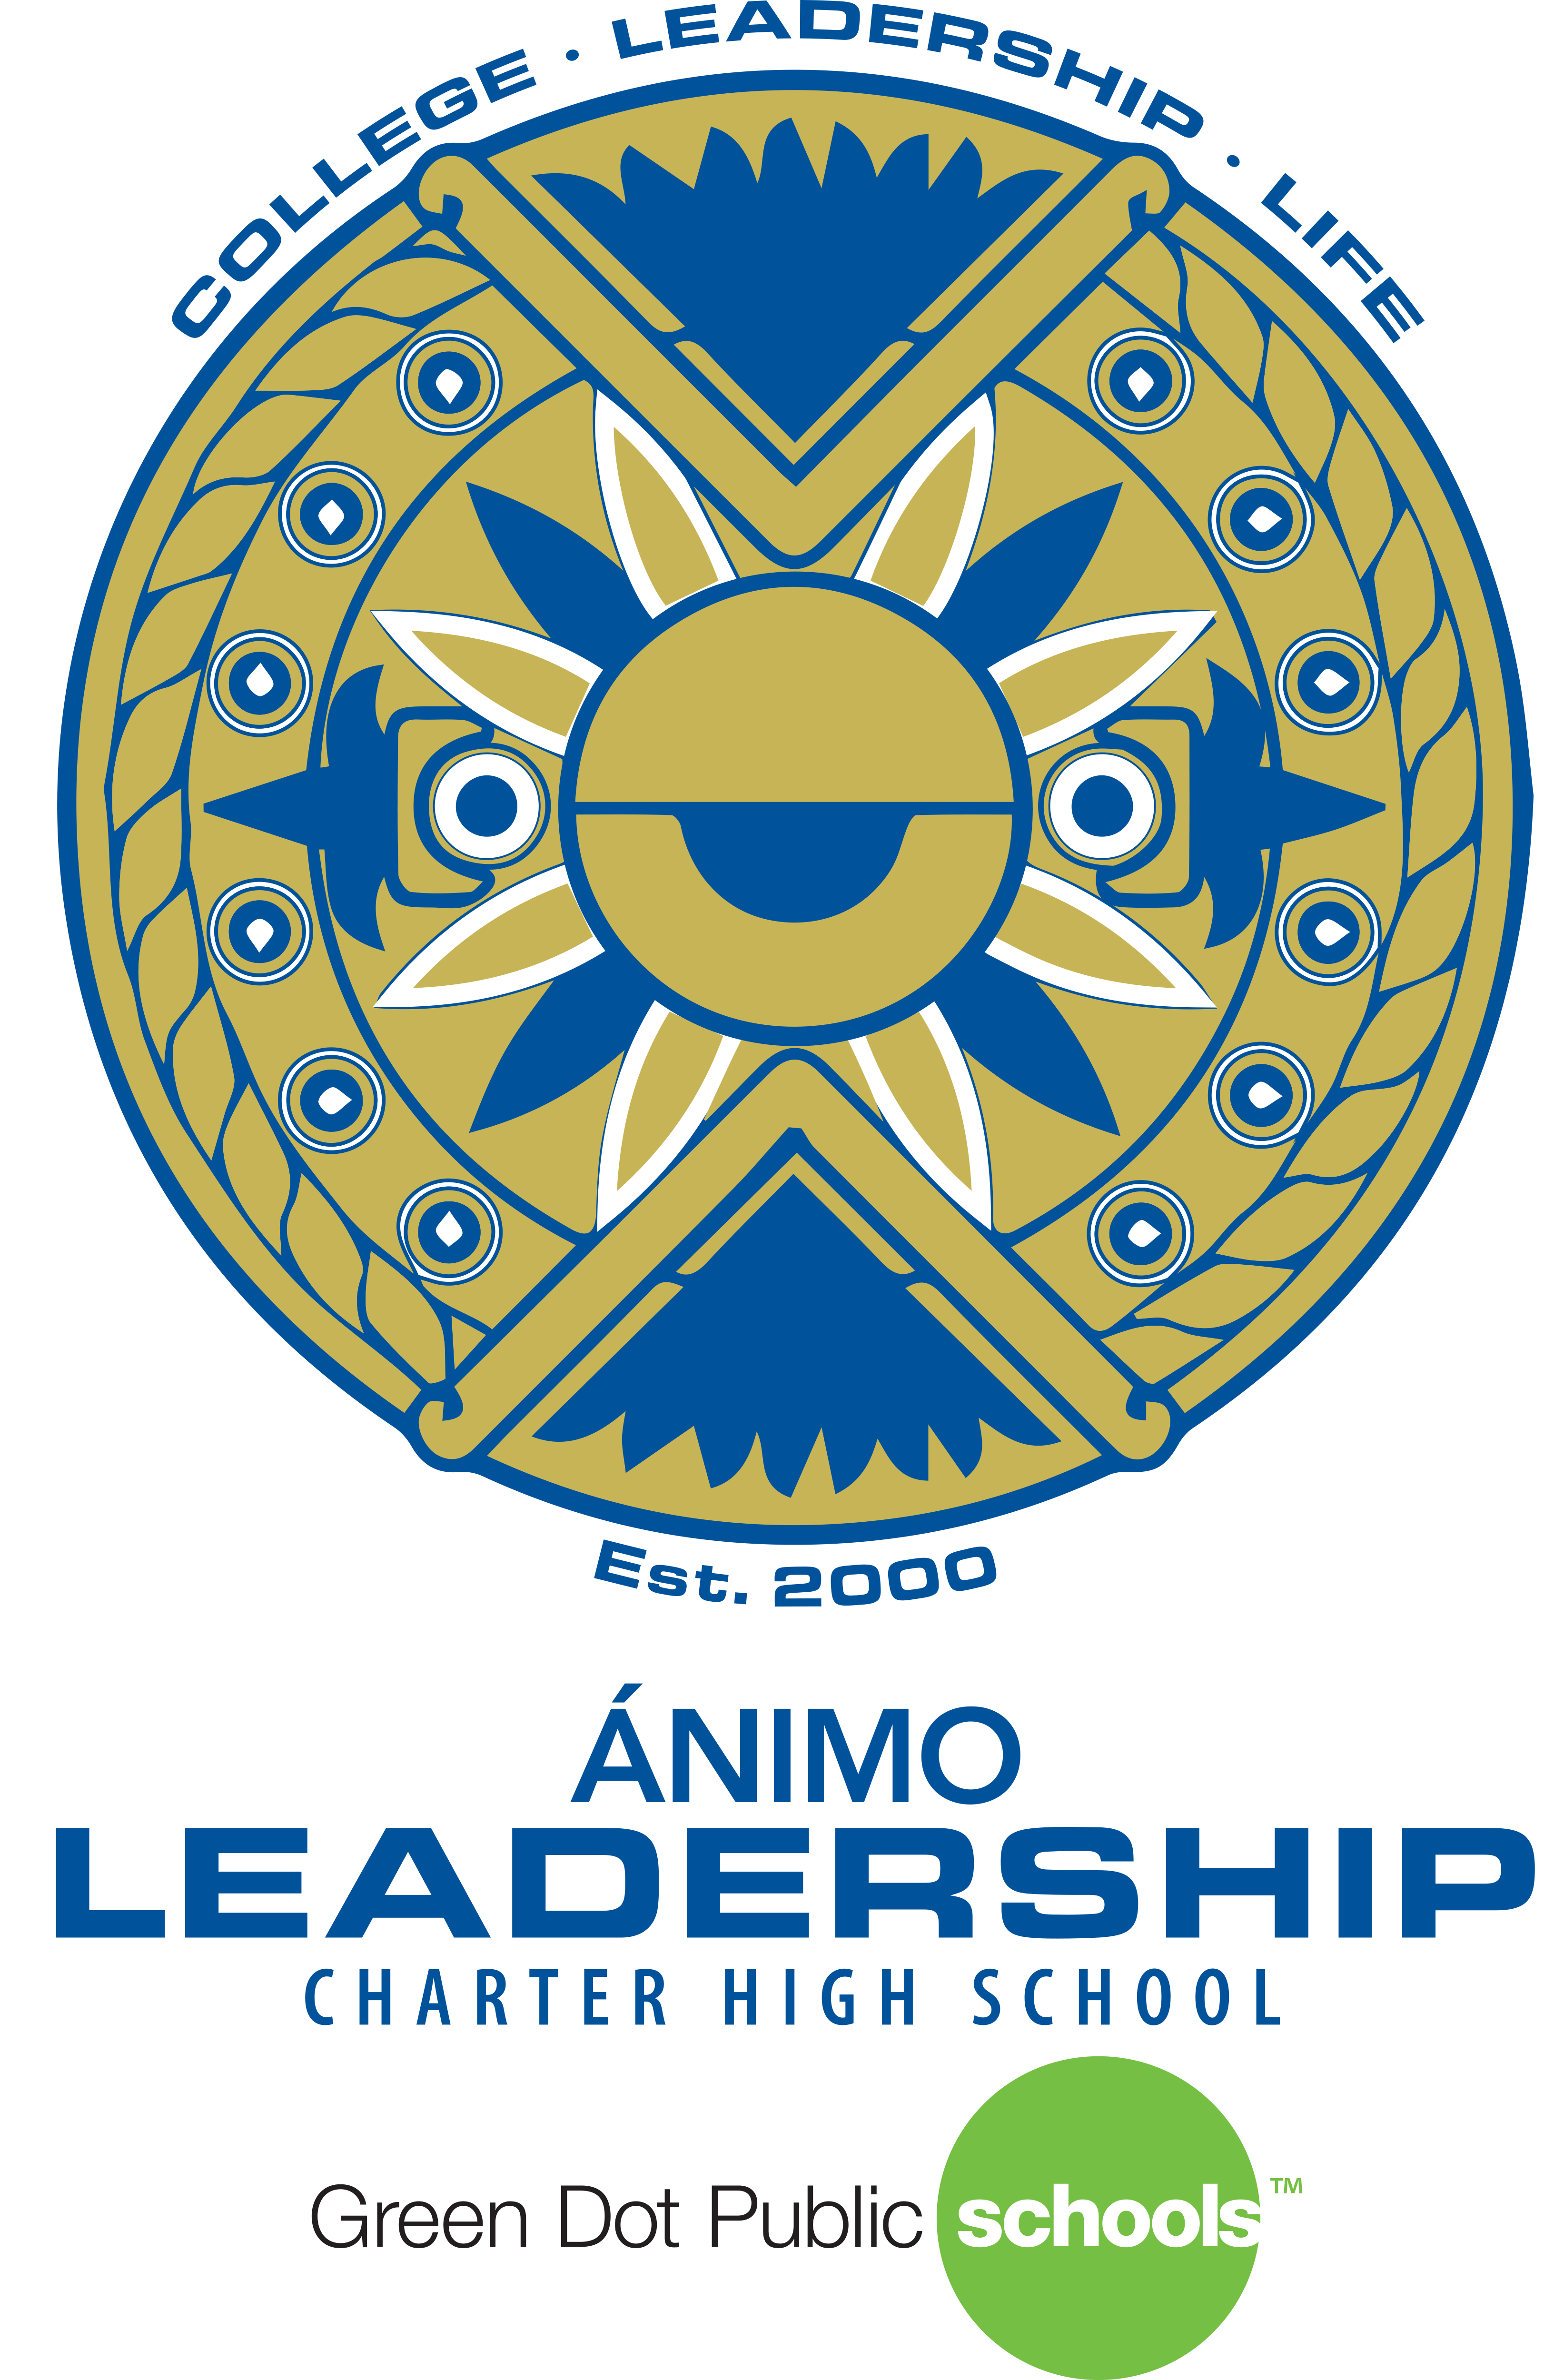 Animo Leadership Charter High School